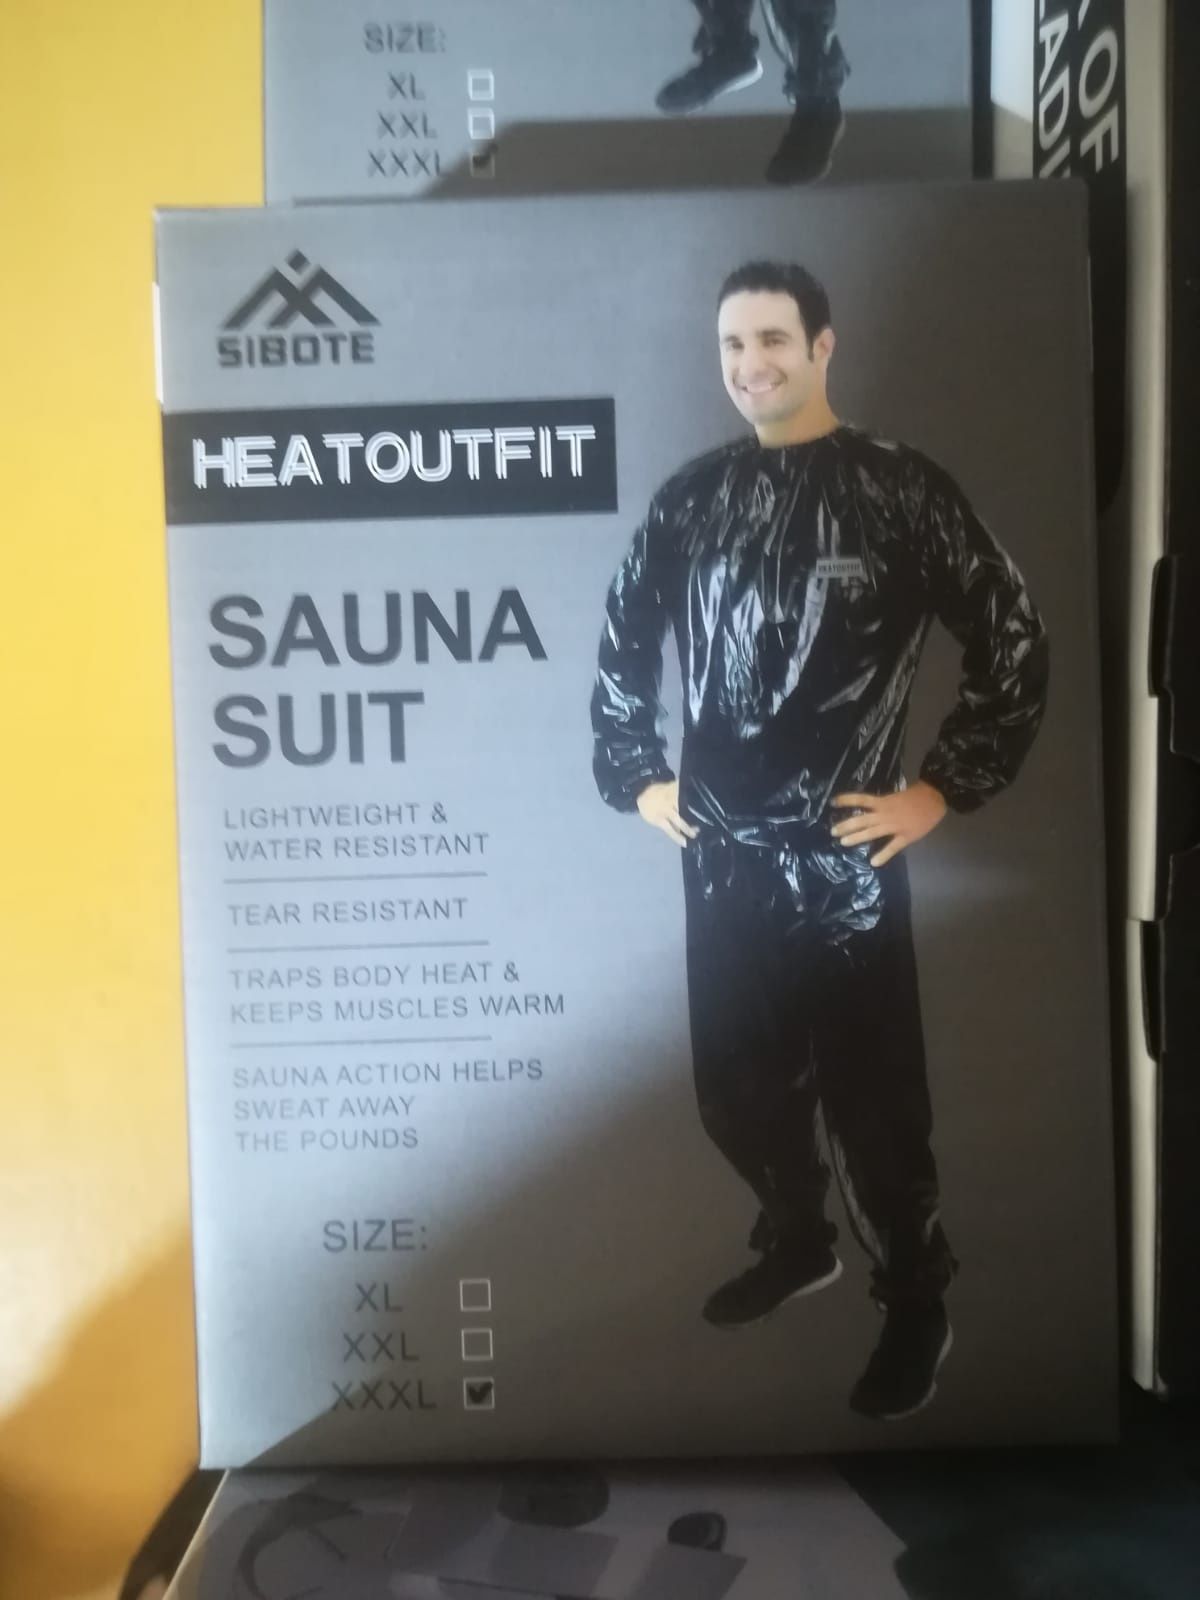 Costum pentru slabit cu efect de sauna